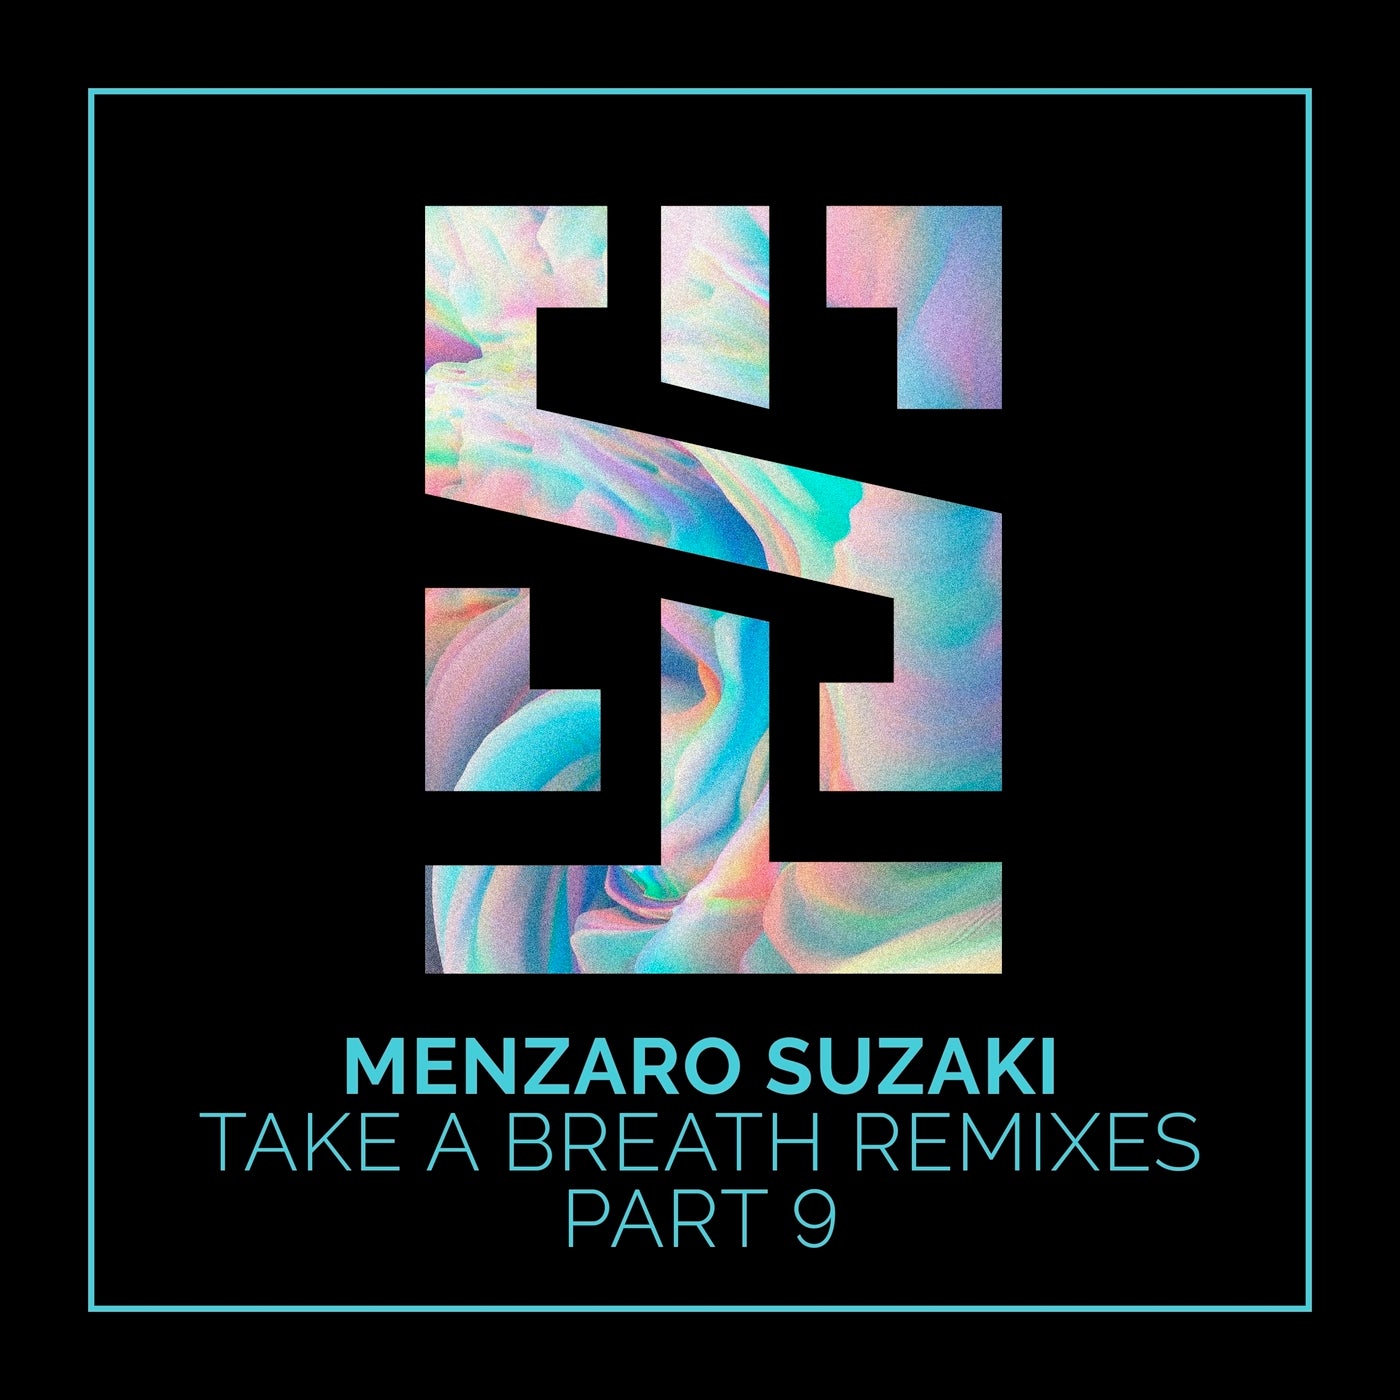 Menzaro Suzaki music download - Beatport